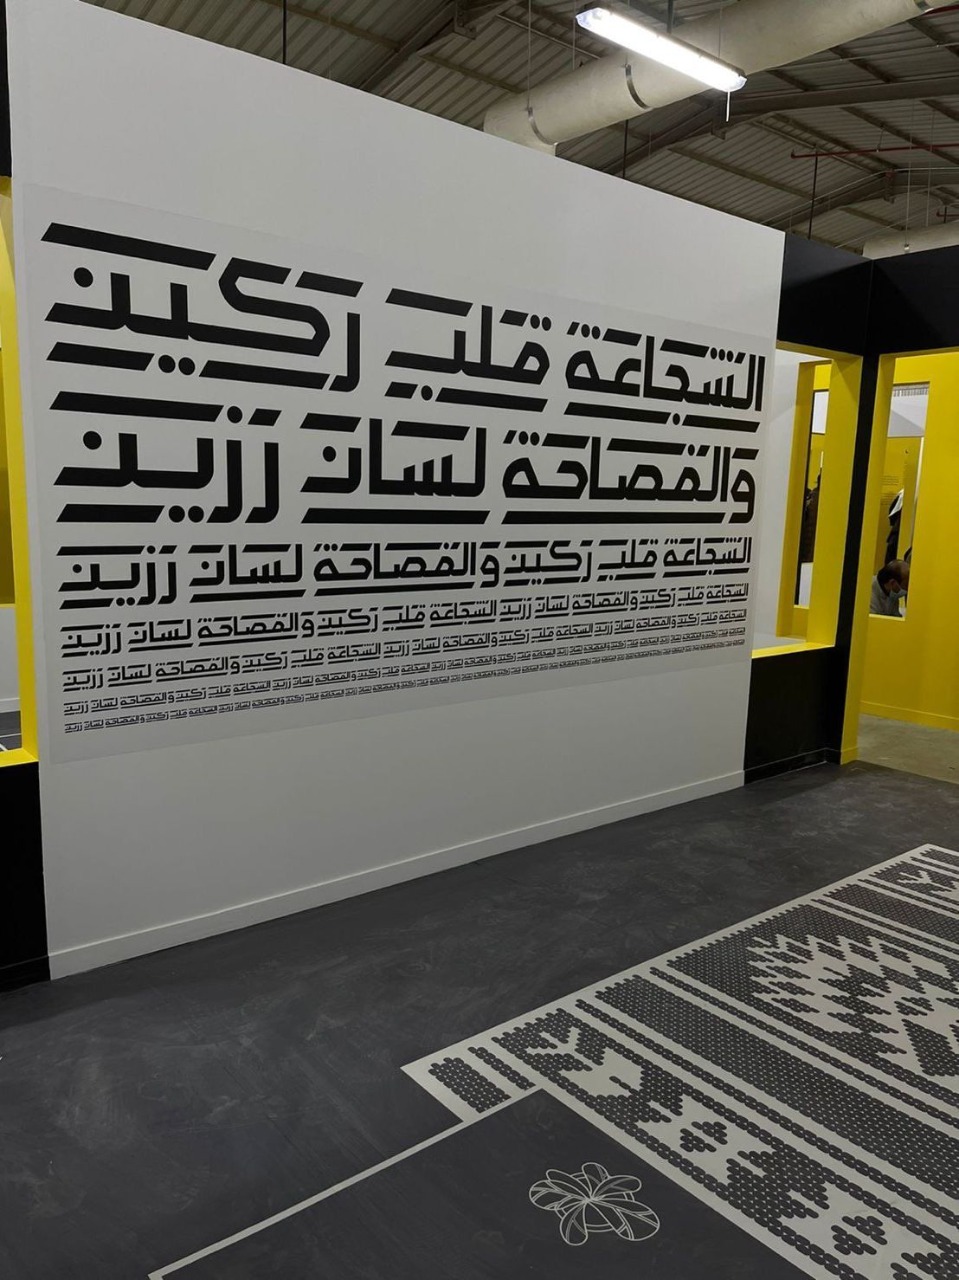 عفراء السماحي: المهرجان السعودي للتصميم منصة لإبداعات مُنتظرة